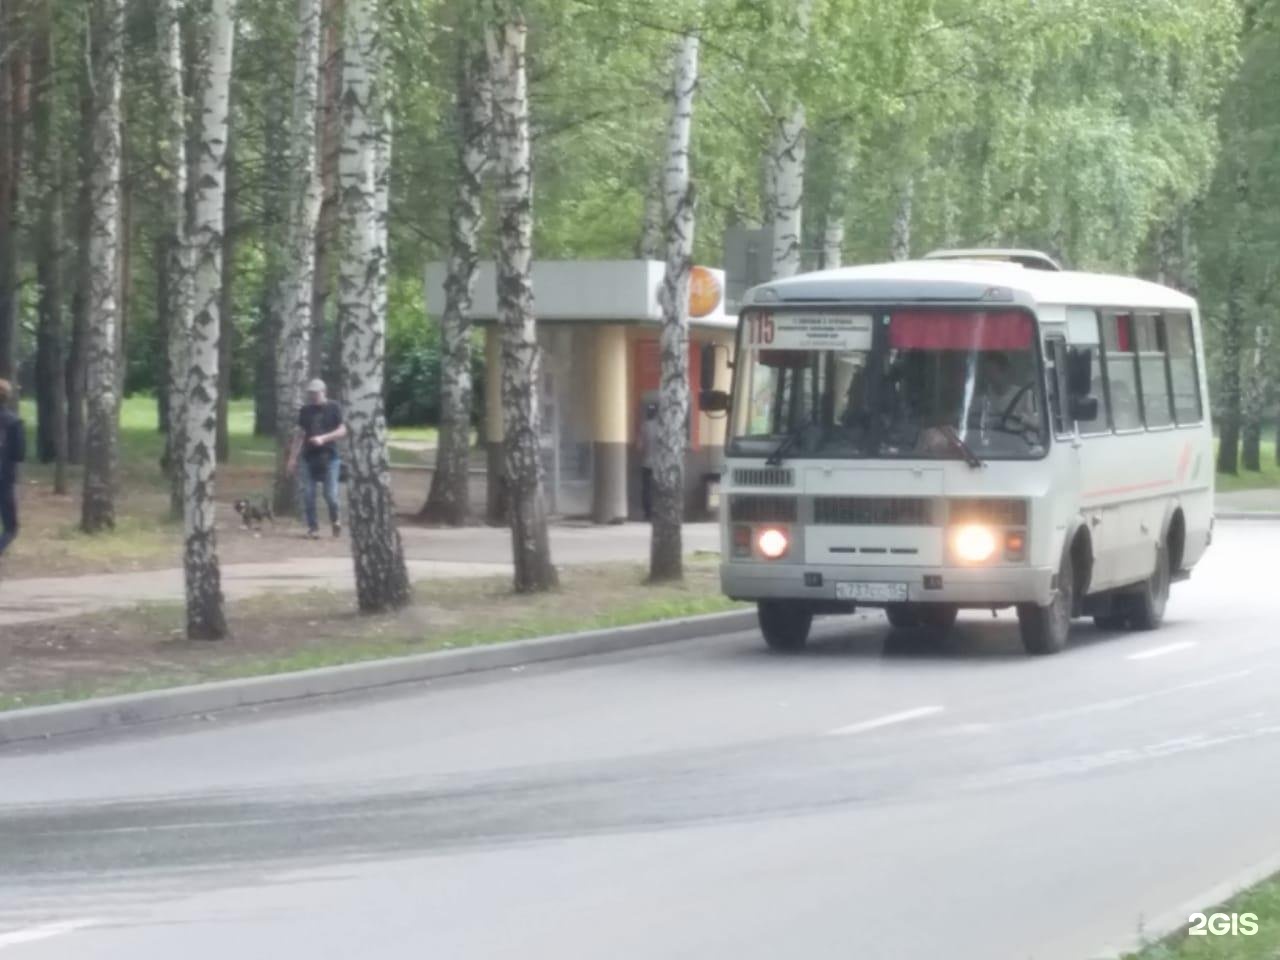 Автобус 115 маршрут остановки